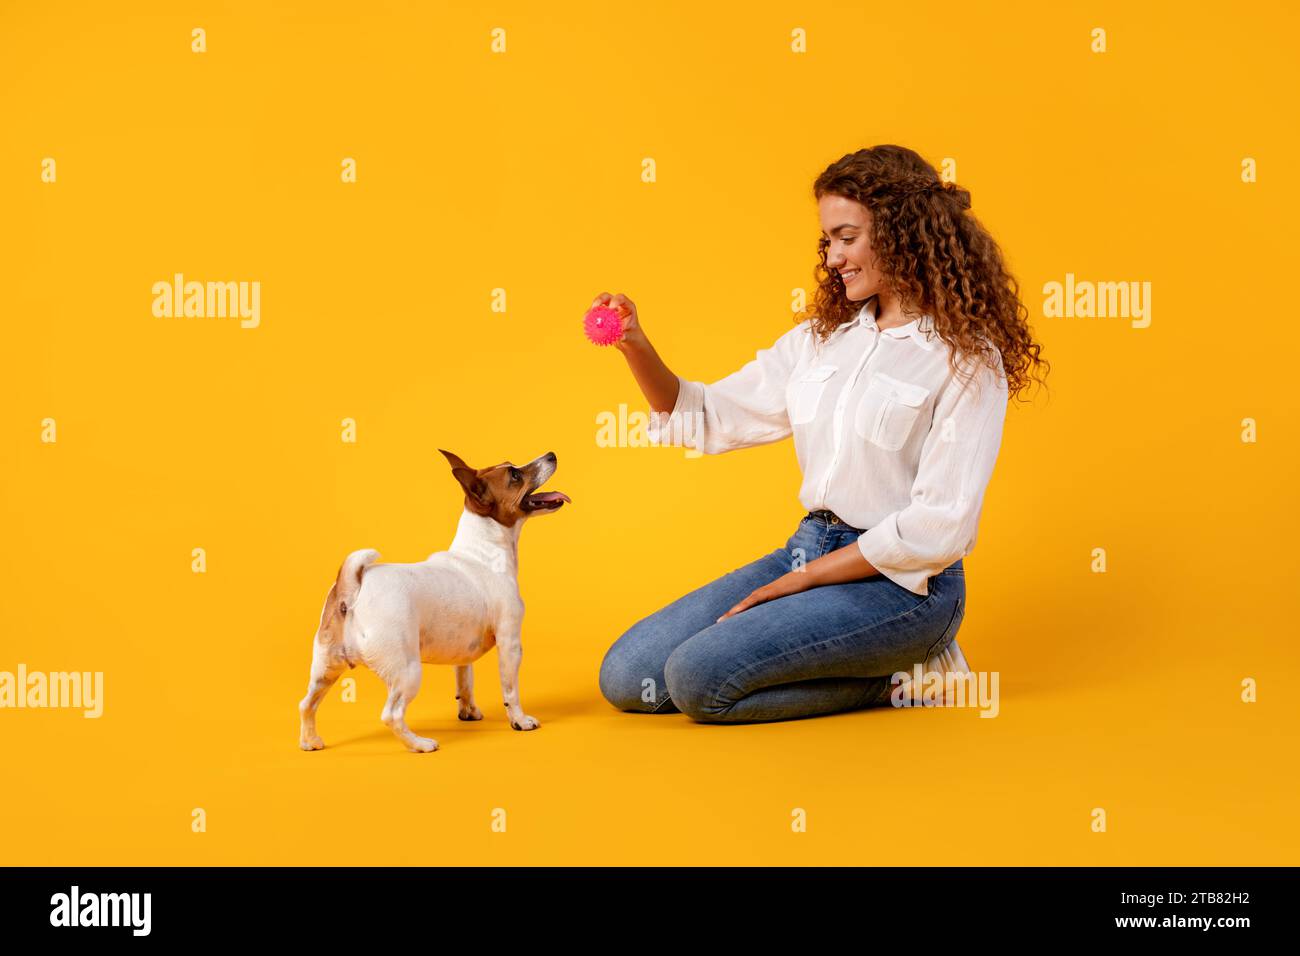 La donna gioca con il cane sullo sfondo giallo Foto Stock